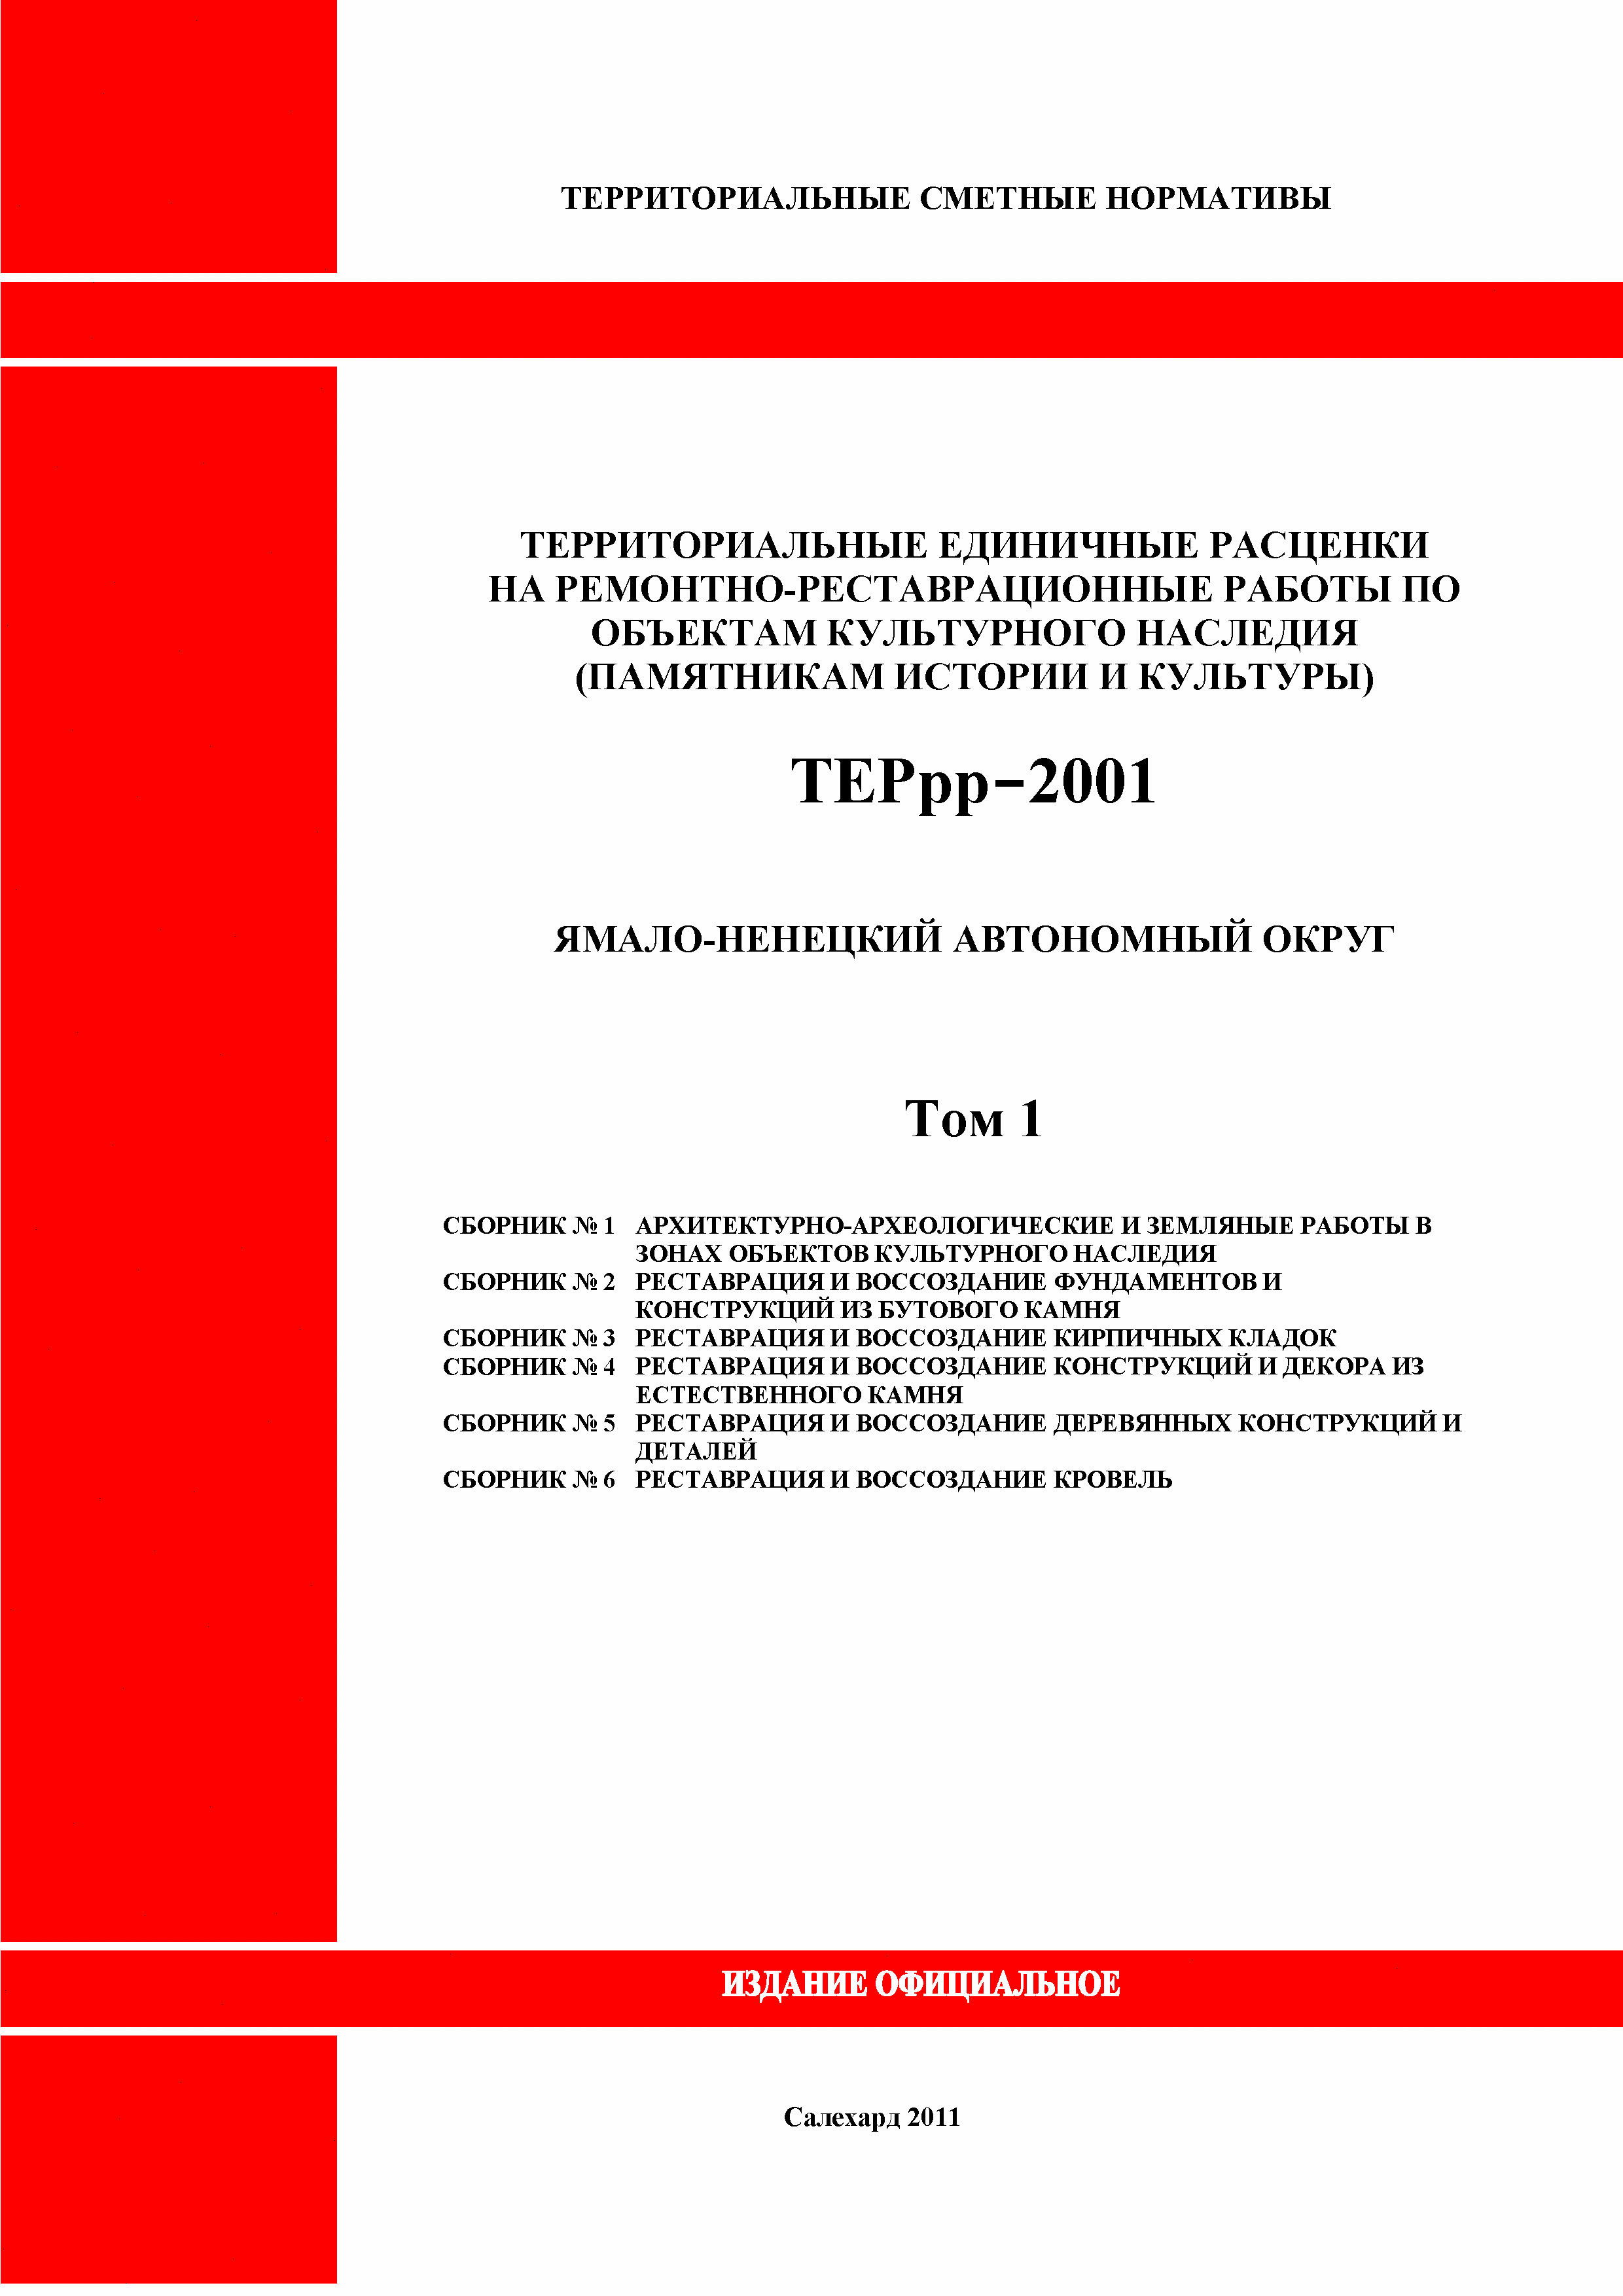 ТЕРрр Ямало-Ненецкий автономный округ 2001